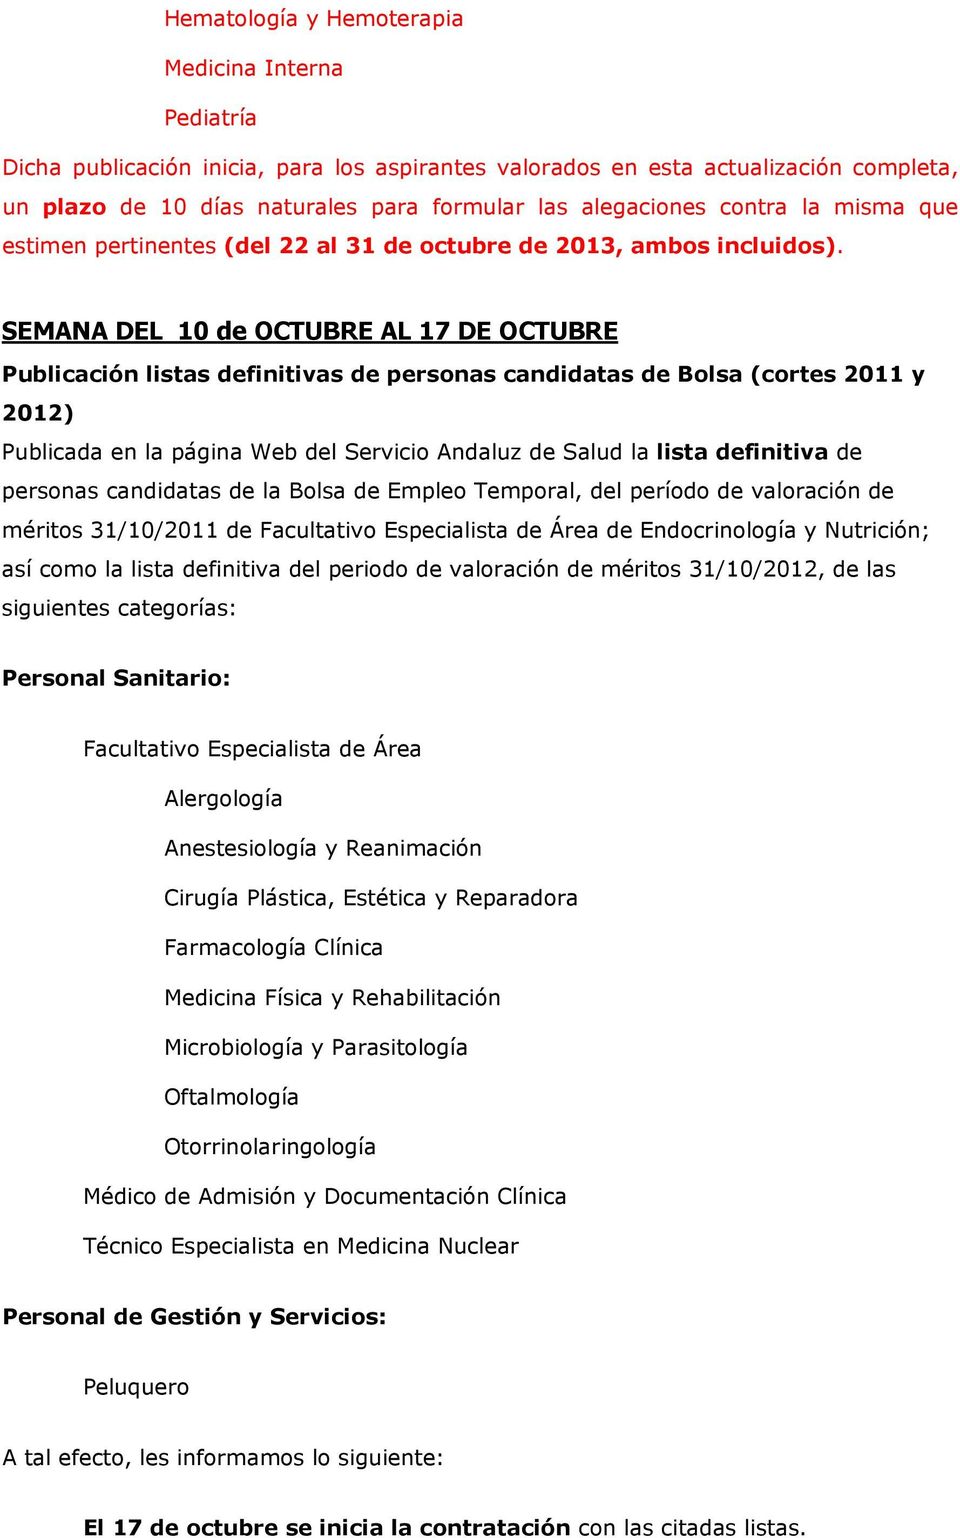 SEMANA DEL 10 de OCTUBRE AL 17 DE OCTUBRE Publicación listas definitivas de personas candidatas de Bolsa (cortes 2011 y 2012) Publicada en la página Web del Servicio Andaluz de Salud la lista